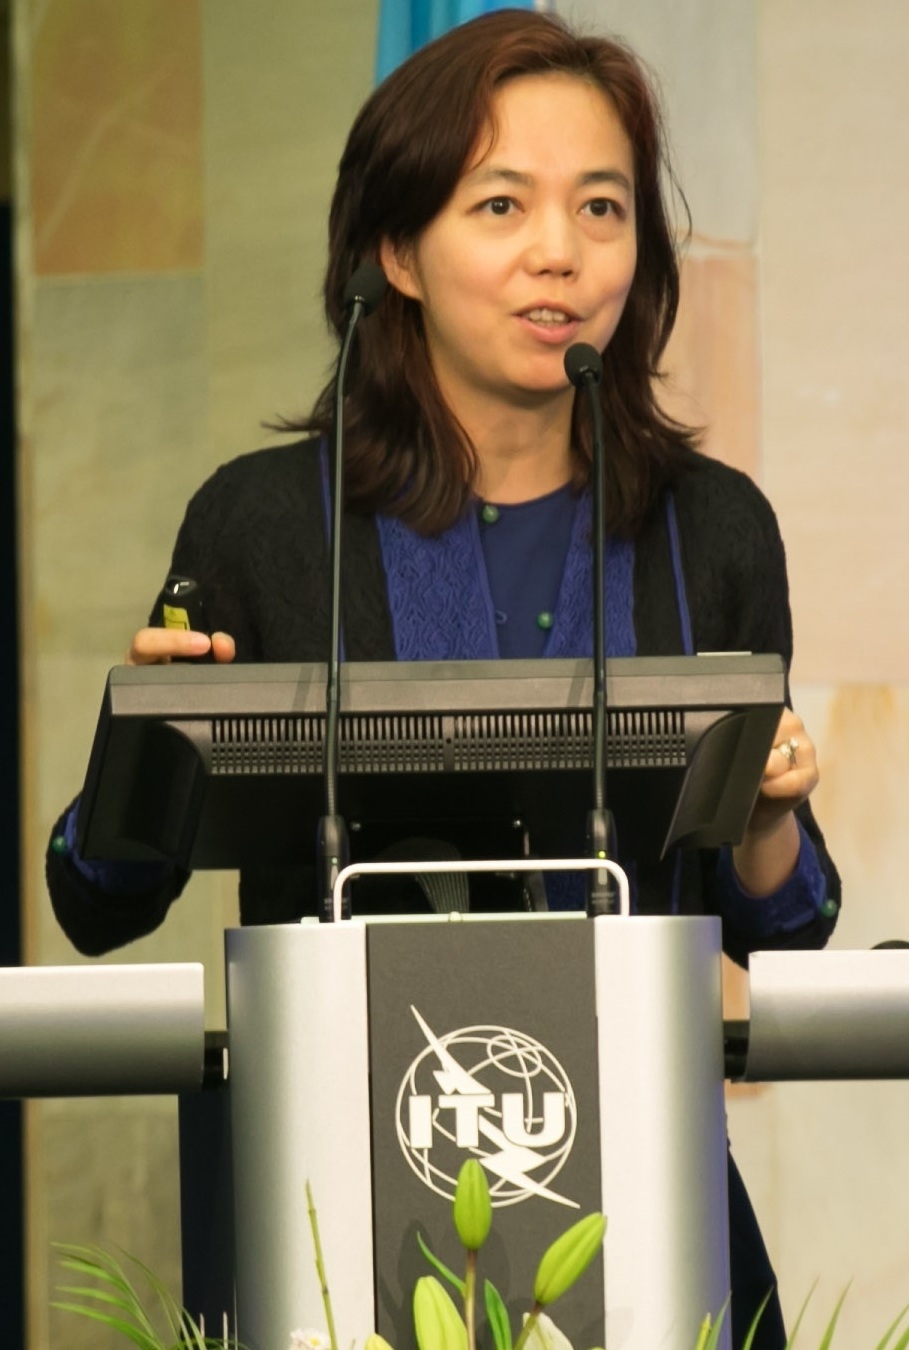 auteur Fei-Fei Li de la citation Les gouvernements peuvent faire un plus grand effort pour encourager l'enseignement en informatique, en particulier chez les jeunes filles, les minorités raciales et d'autres groupes dont les perspectives ont été sous-représentées dans l'IA.